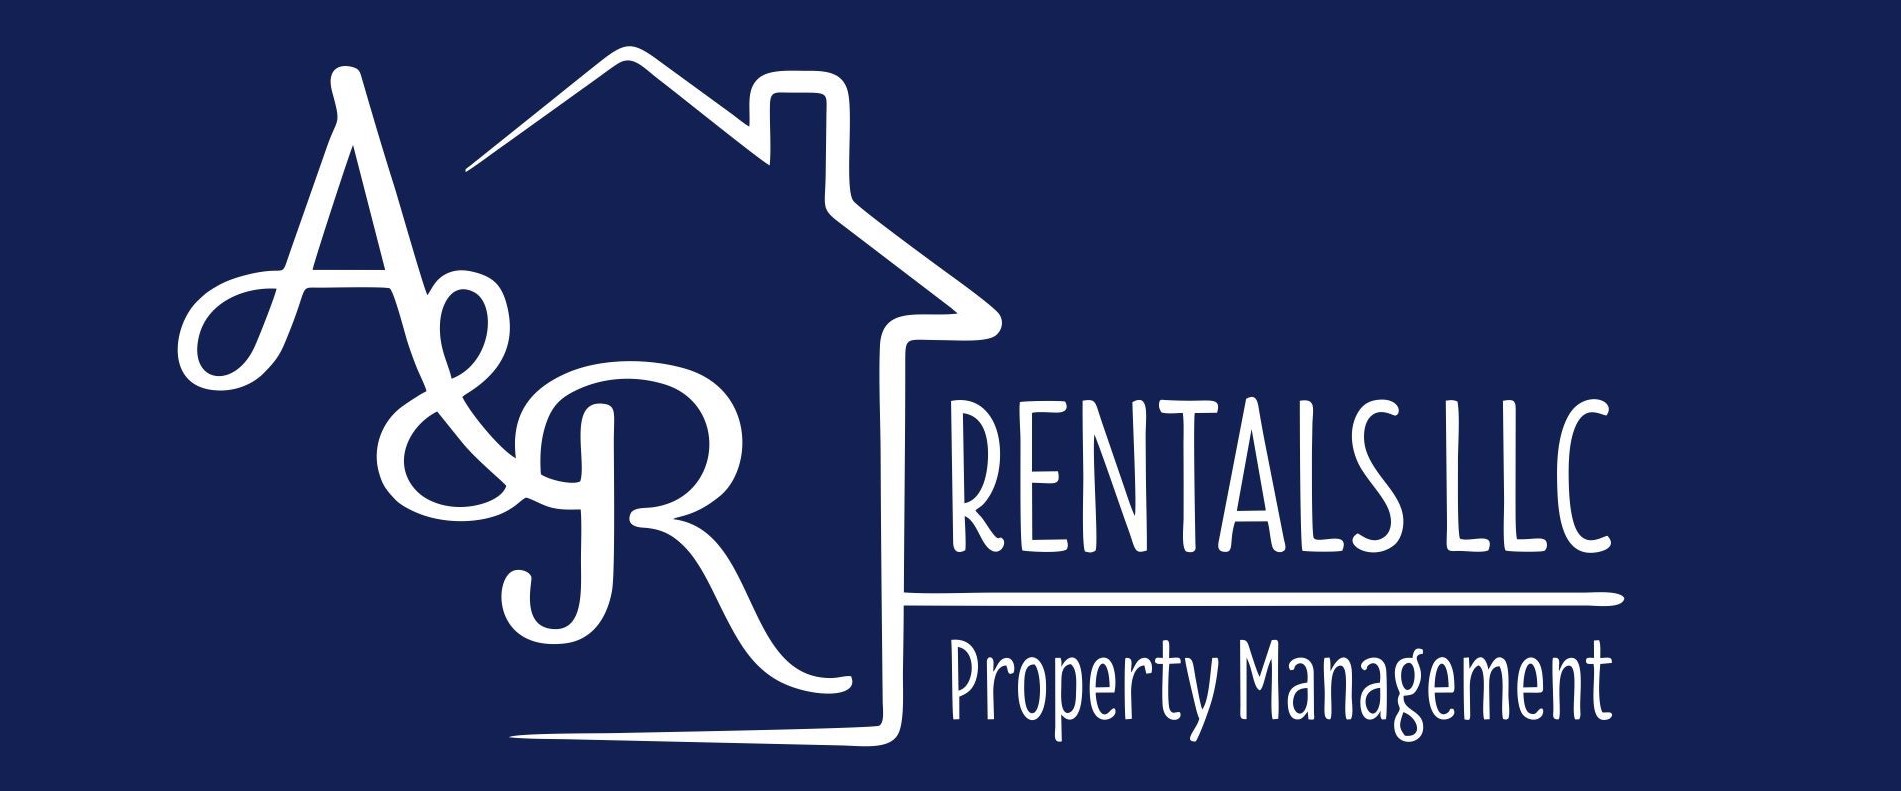 A&R Rentals LLC